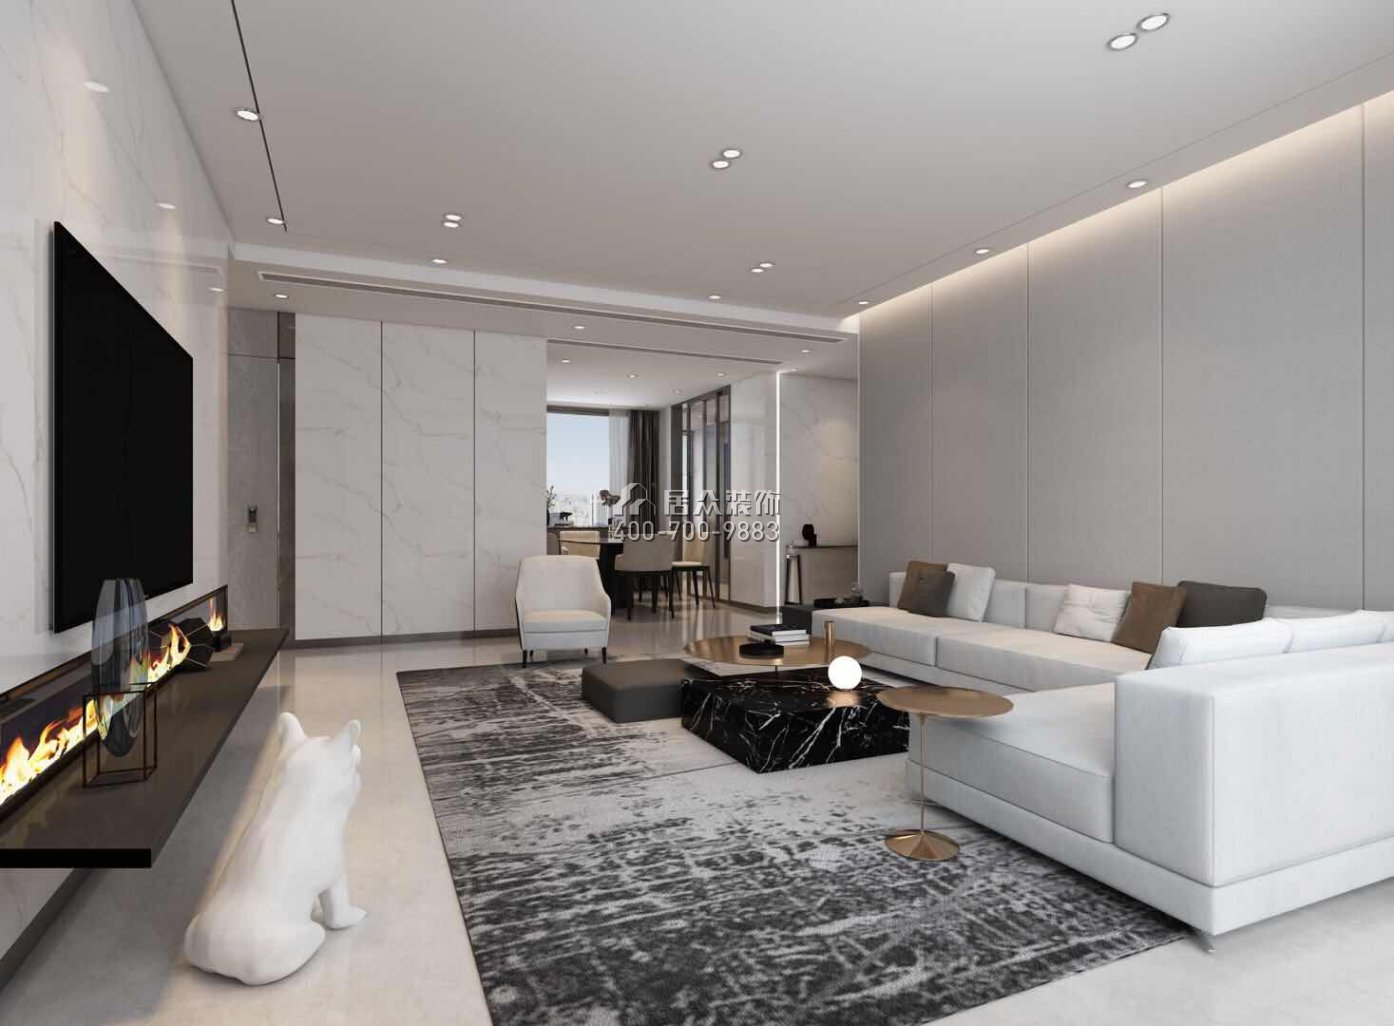 香山美墅五期170平方米現代簡約風格平層戶型客廳裝修效果圖